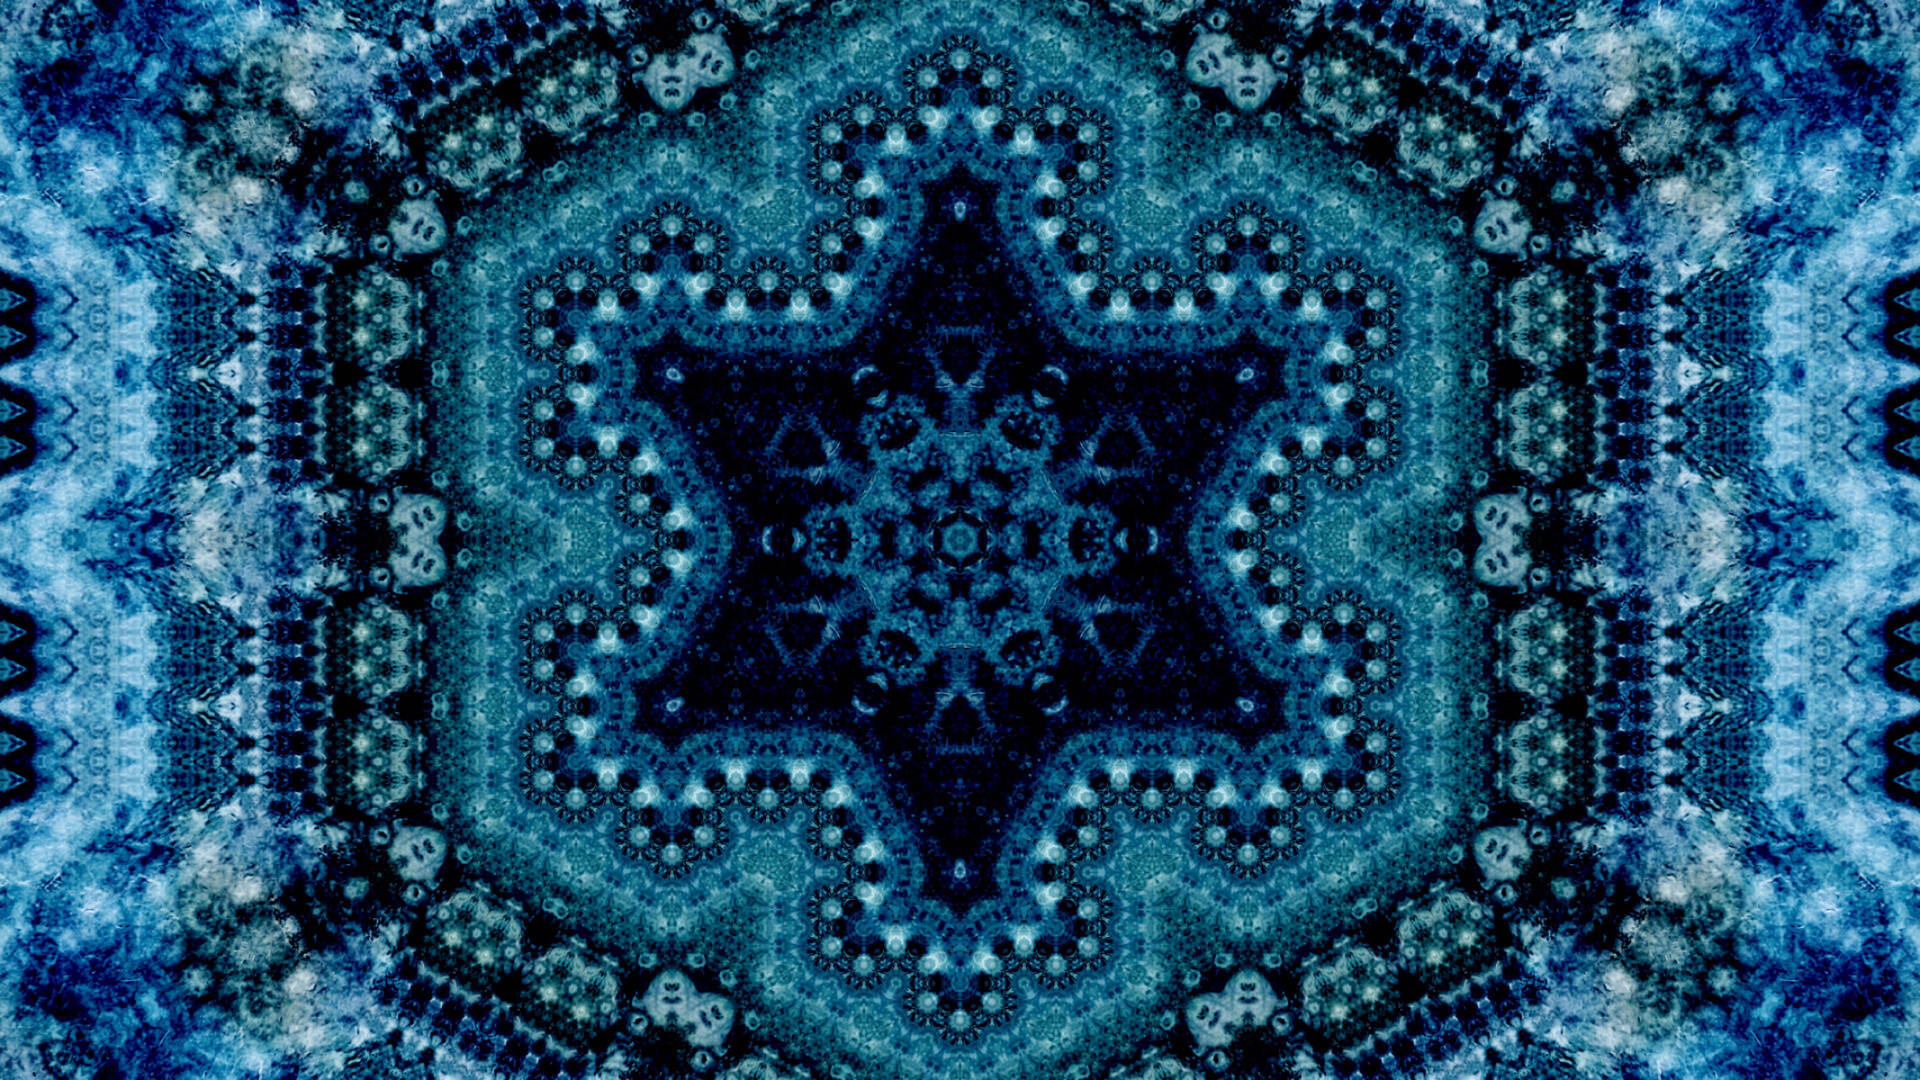 Symmetrical Star Pattern Wallpaper